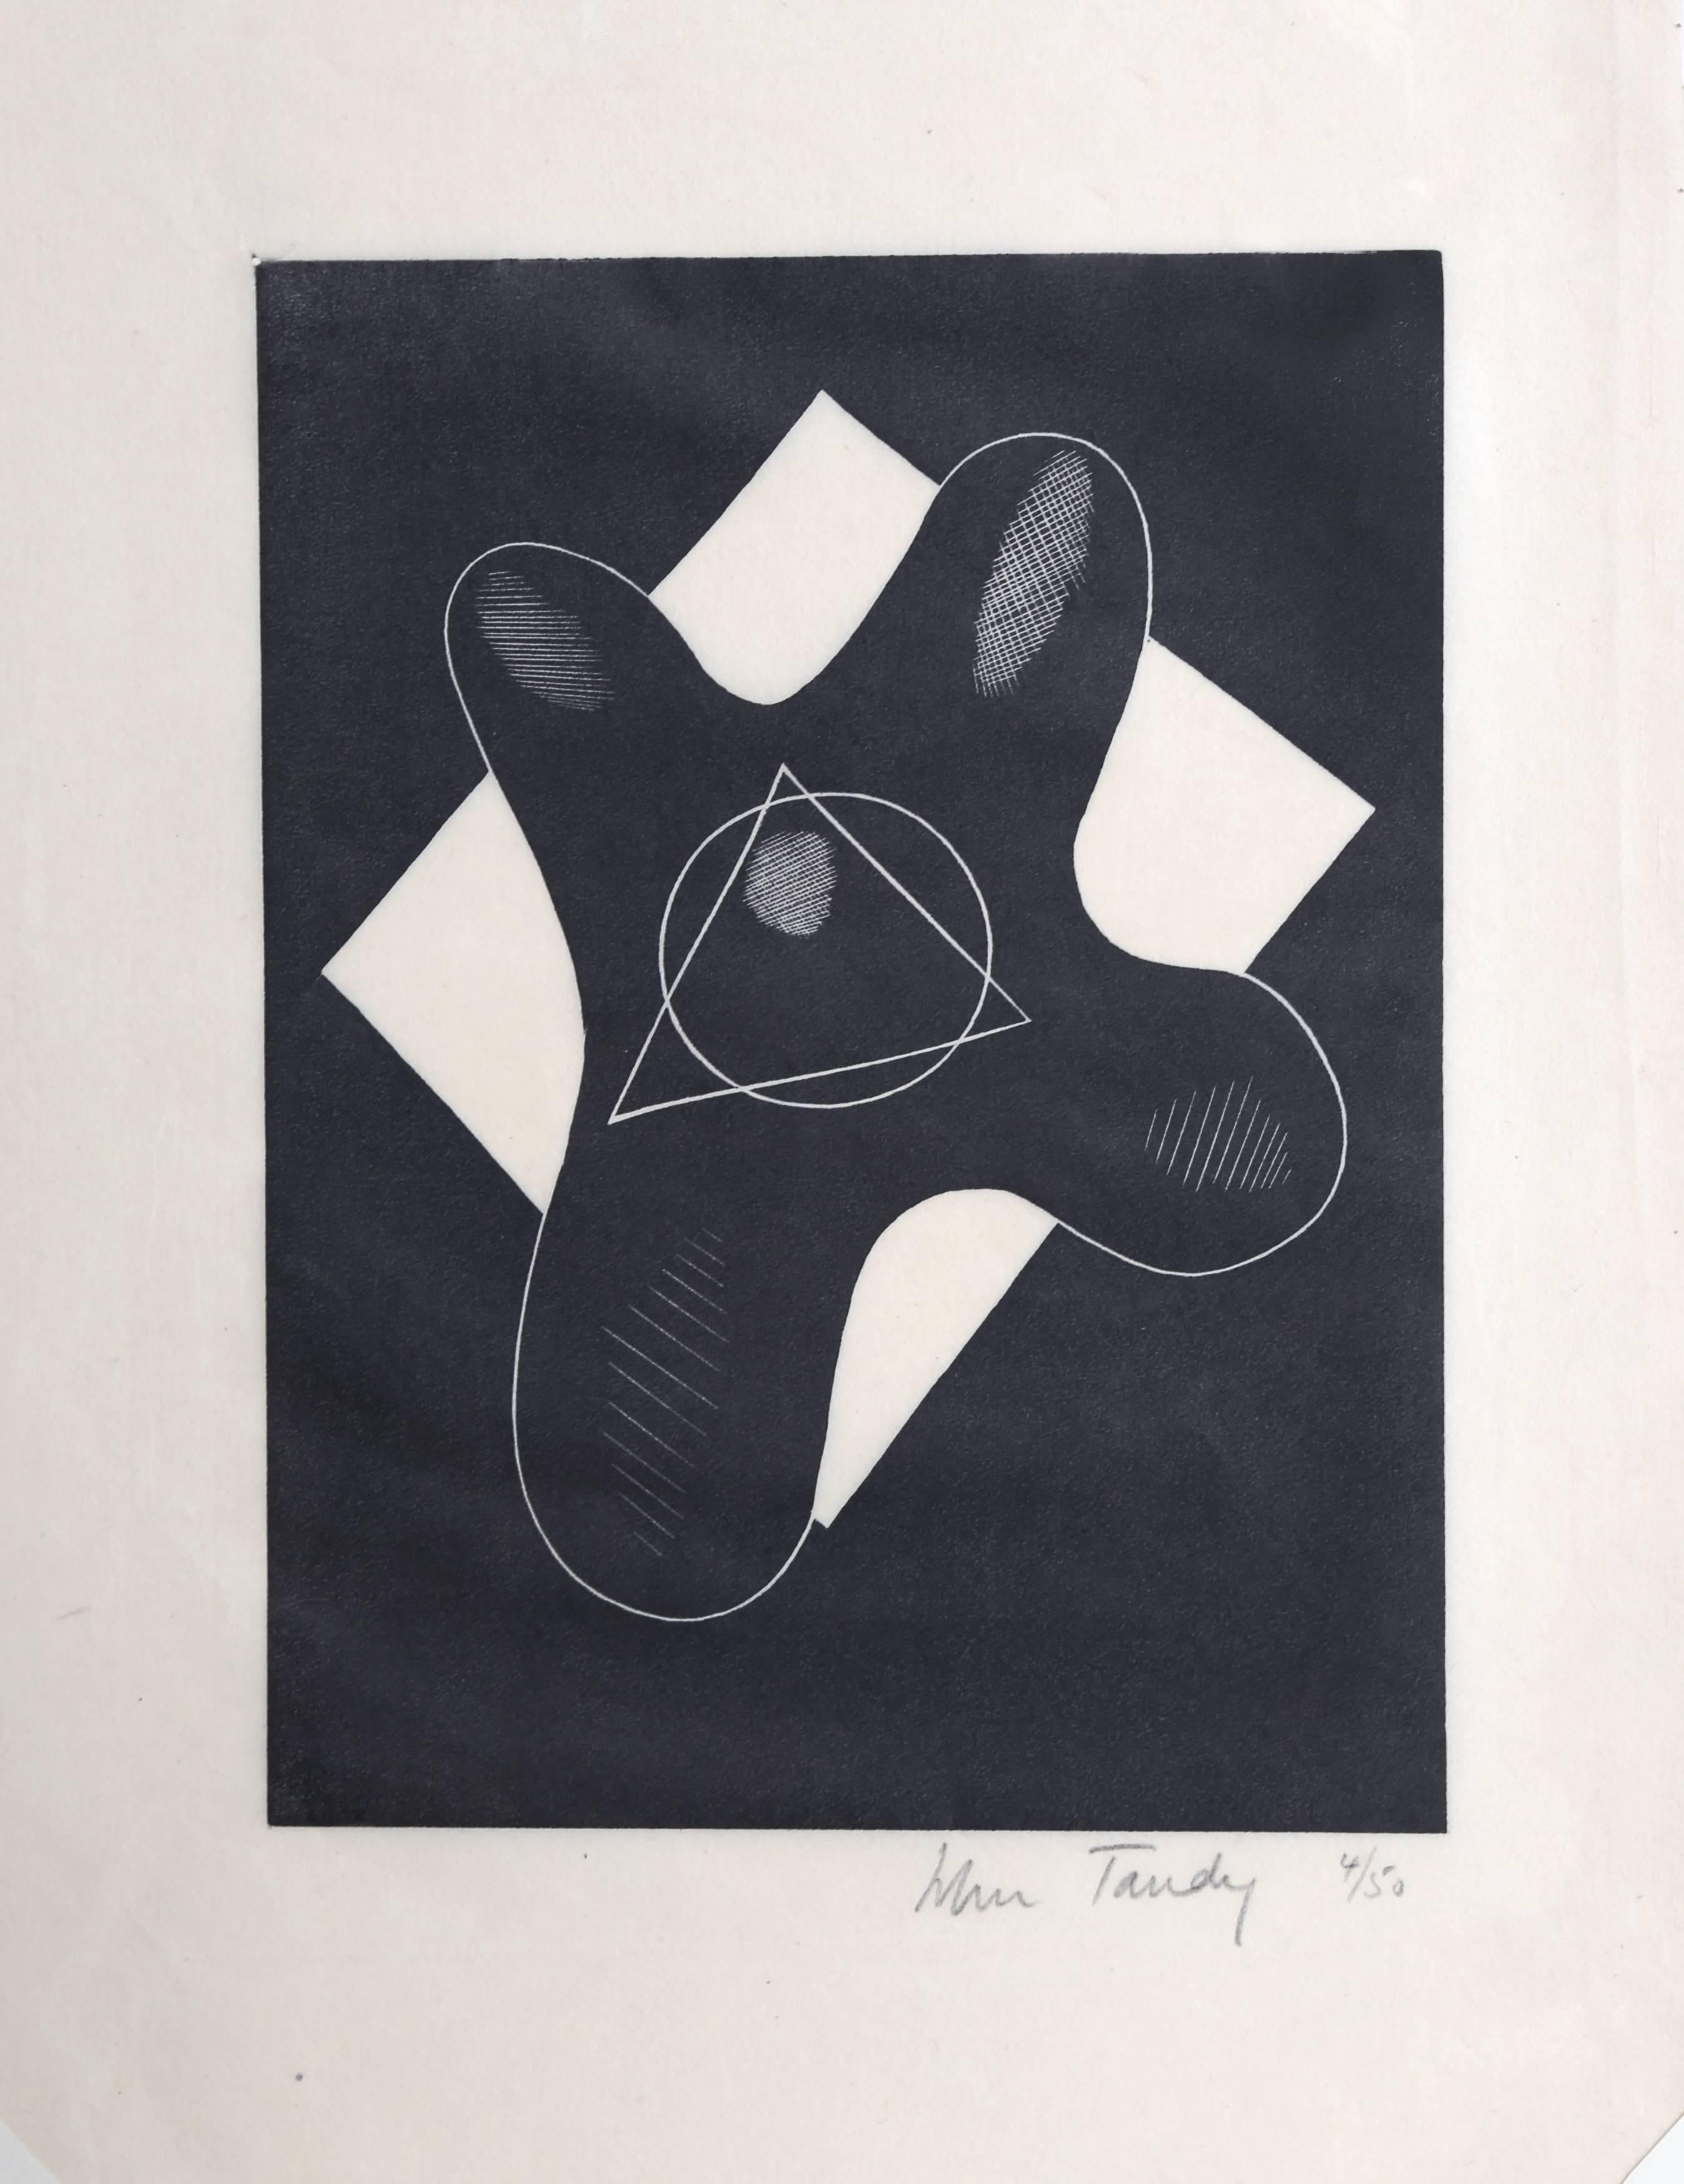 John Tandy Abstract Print - Modern Abstract Woodcut c1928